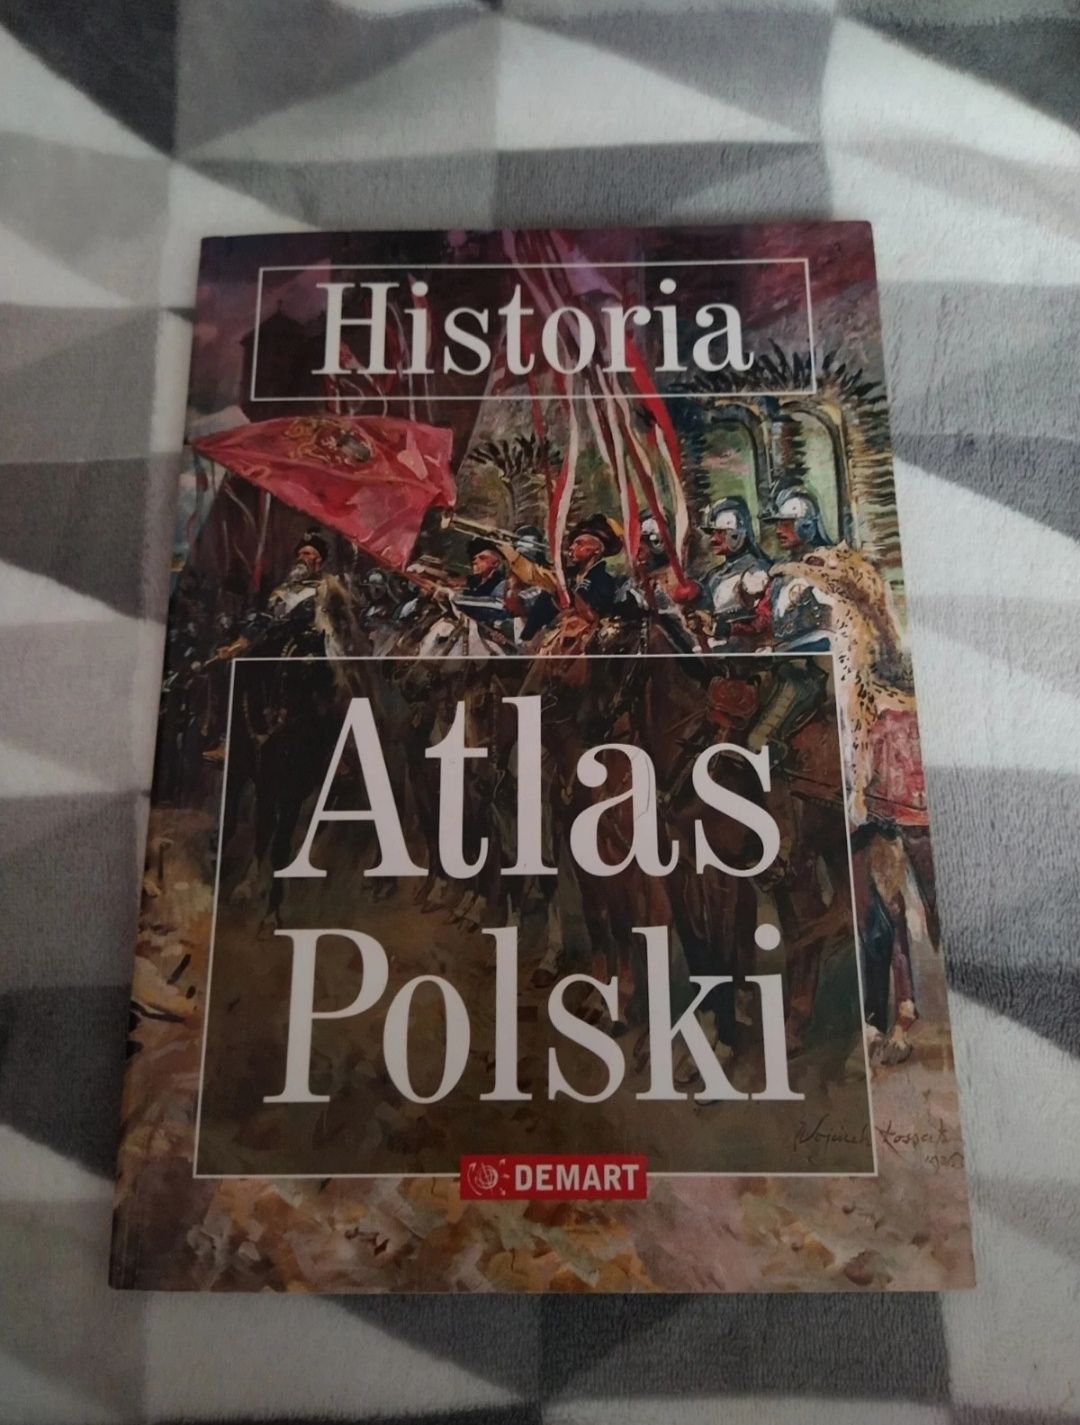 Historia Atlas Polski